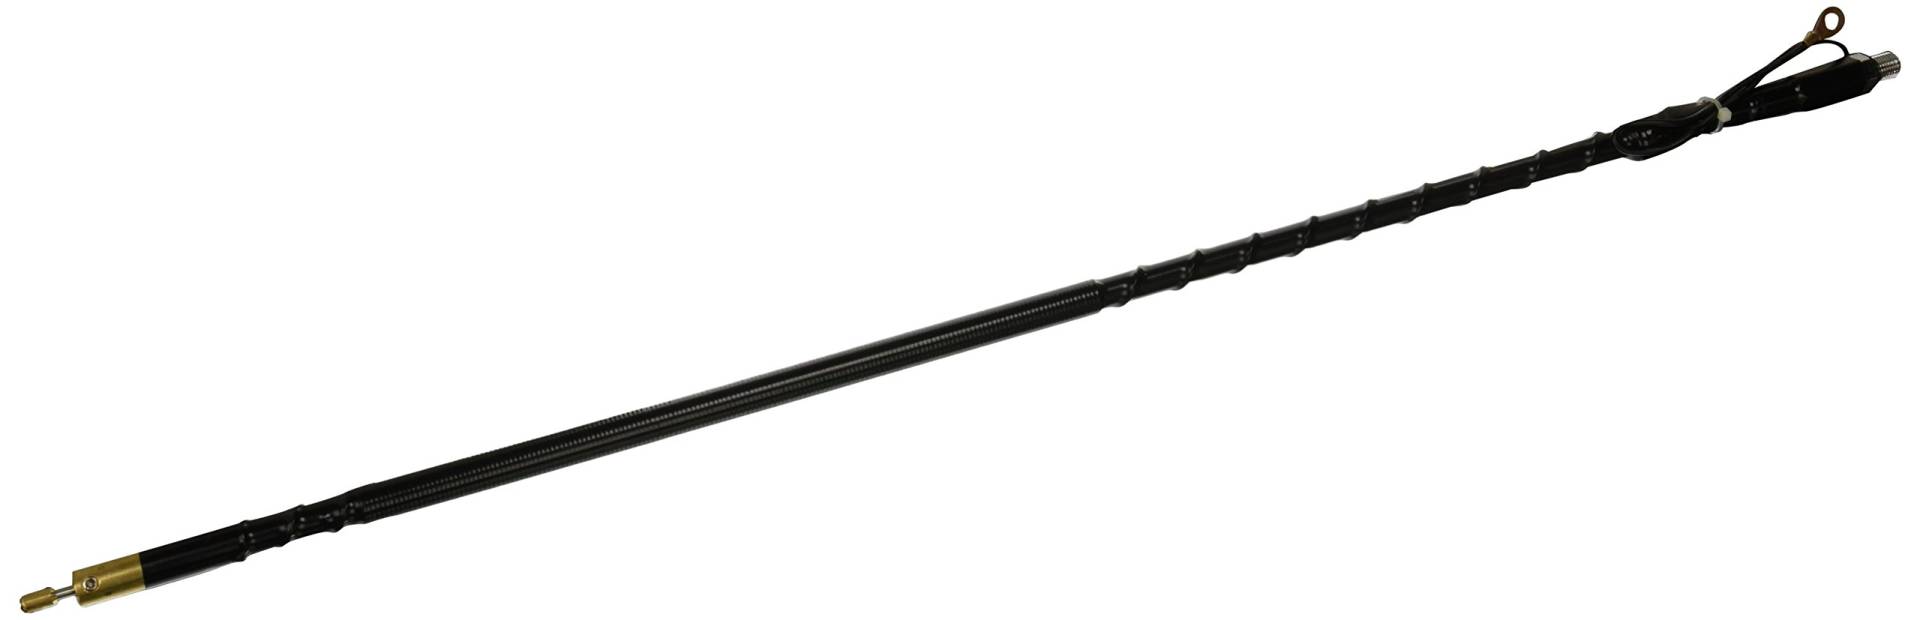 Wilson Antennas 305-480 Silver Load FGT Series Black 2 Foot Fiberglass Peitsche von Wilson